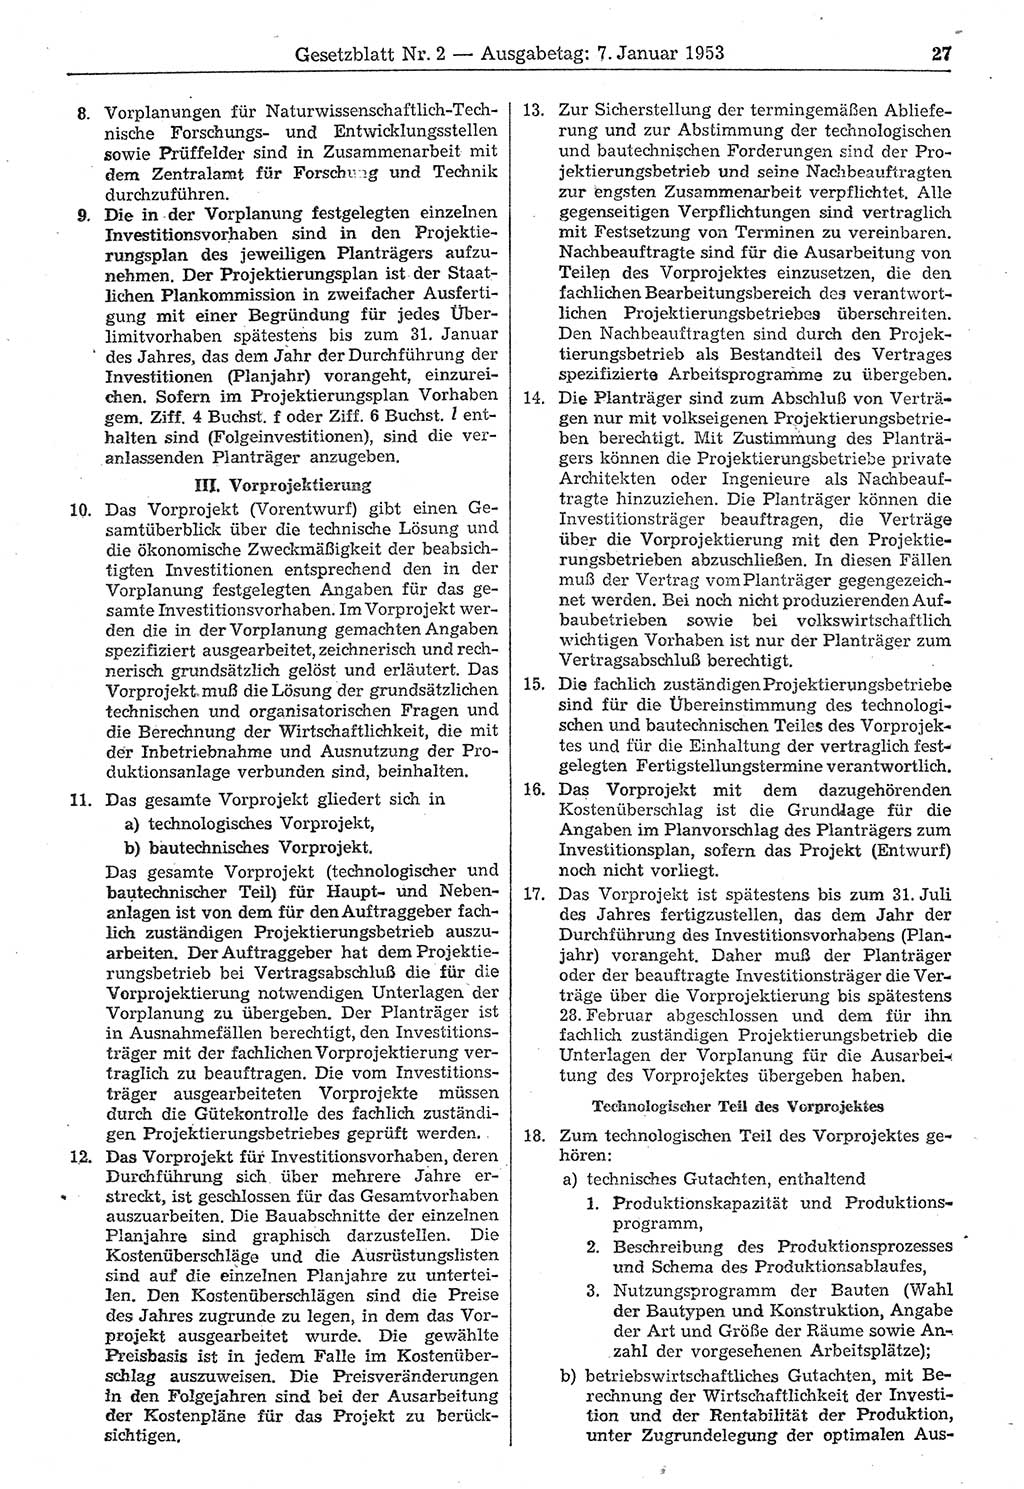 Gesetzblatt (GBl.) der Deutschen Demokratischen Republik (DDR) 1953, Seite 27 (GBl. DDR 1953, S. 27)